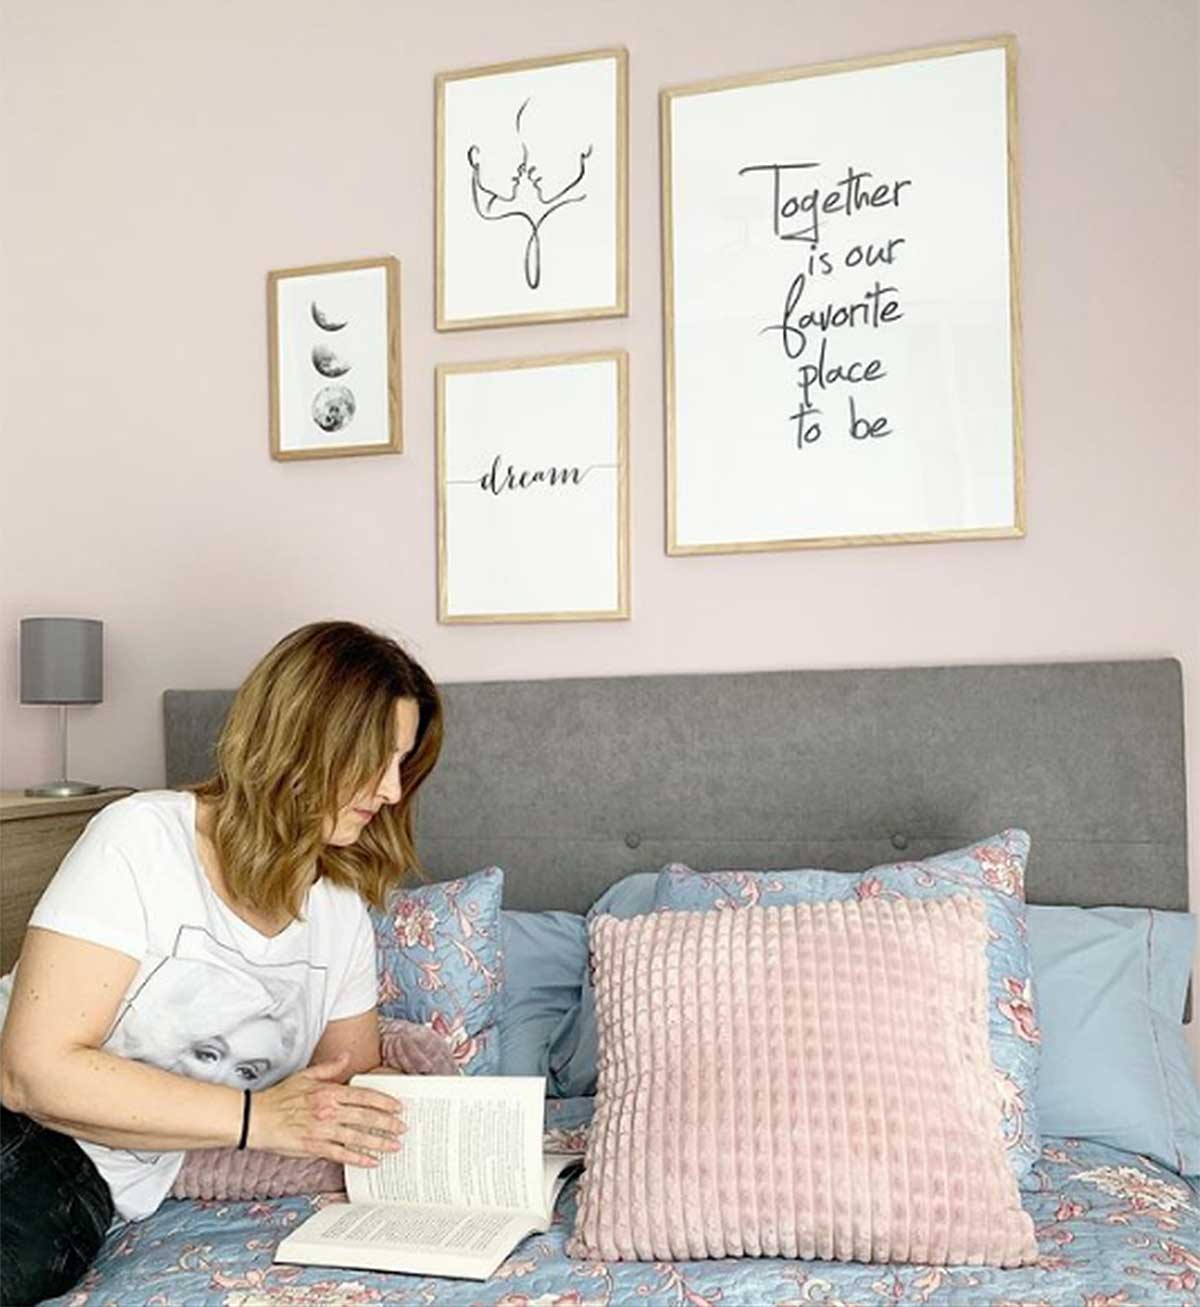 Laura Fa enseña por primera vez el rincón favorito de su casa: su habitación